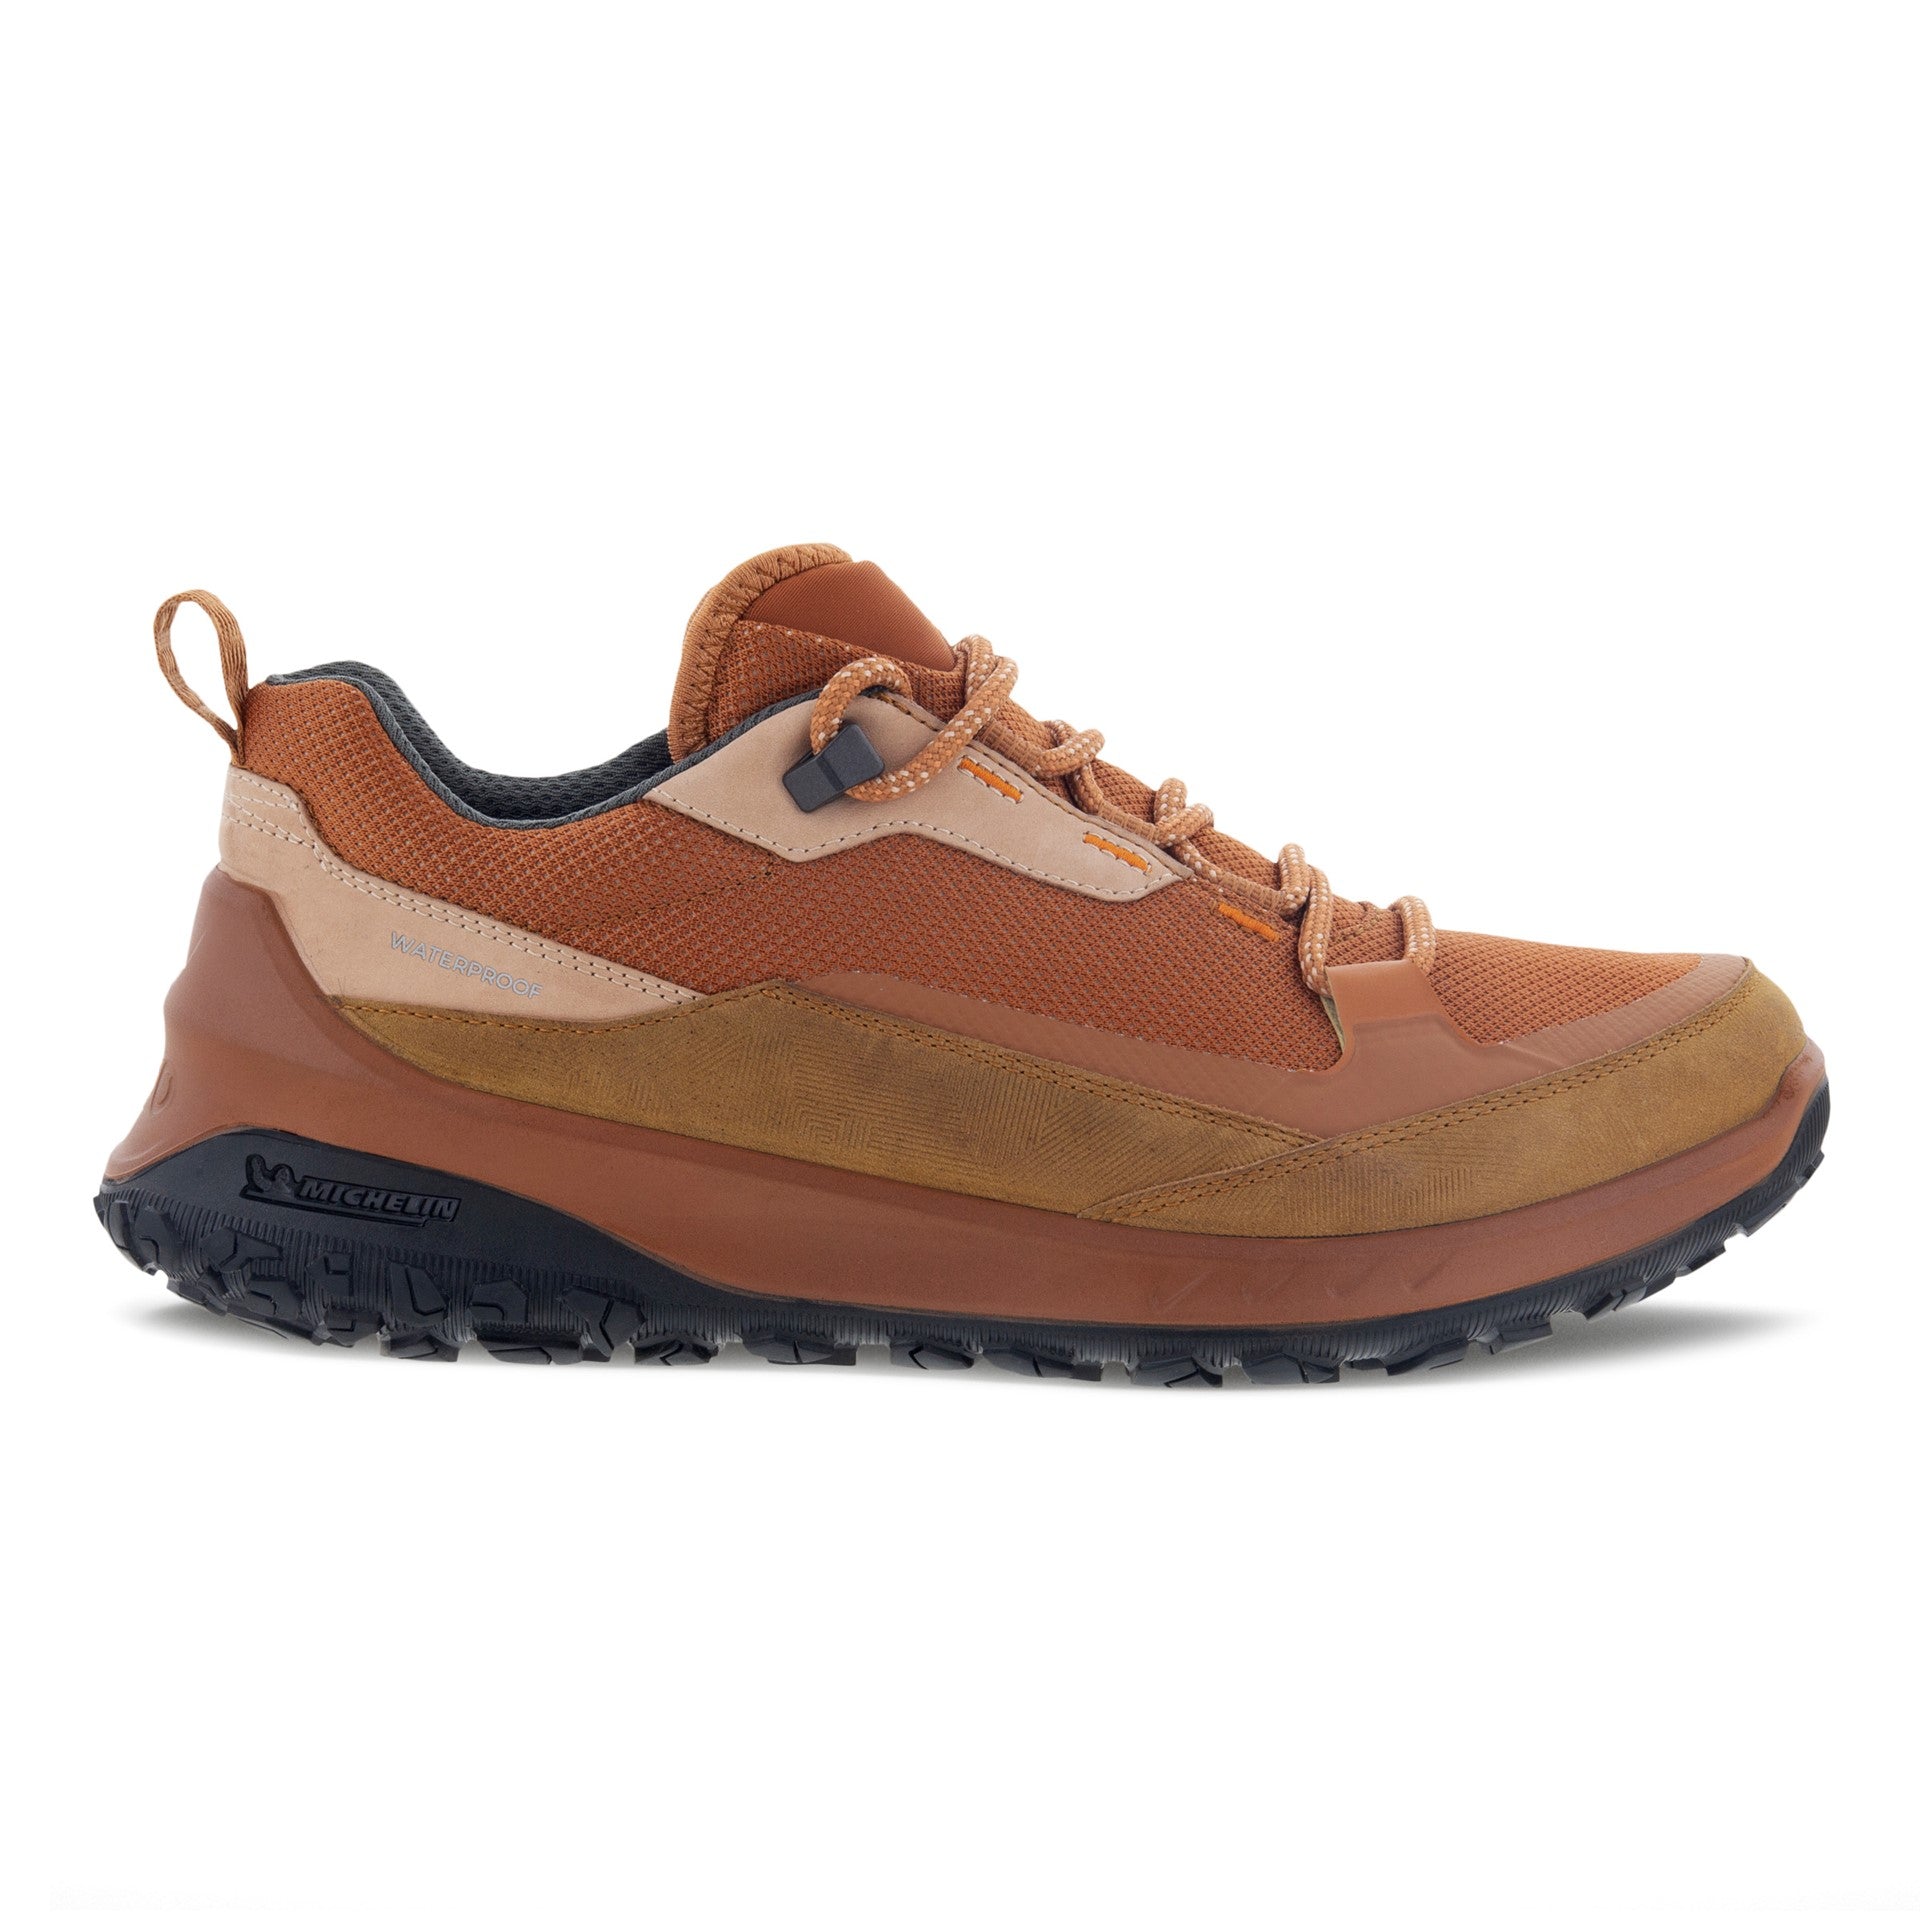 ECCO ULT-TRN low waterproof hiking shoe women sierra orange side